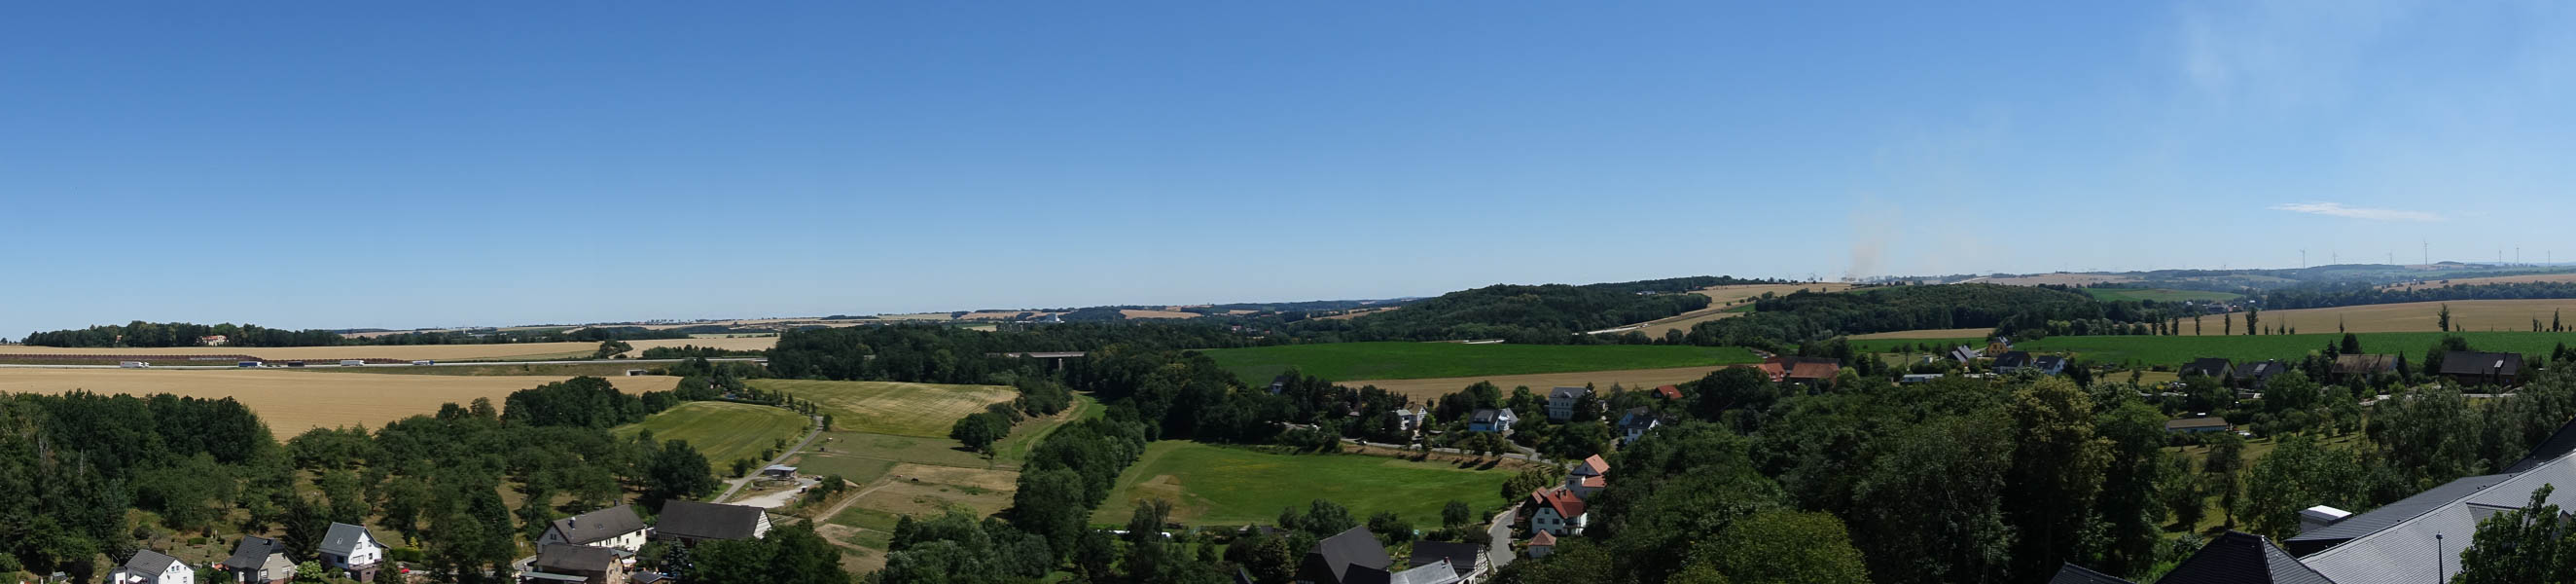 Panorama vom Bergfried der Burg - von Tannenfeld bis zum Erzgebirge!